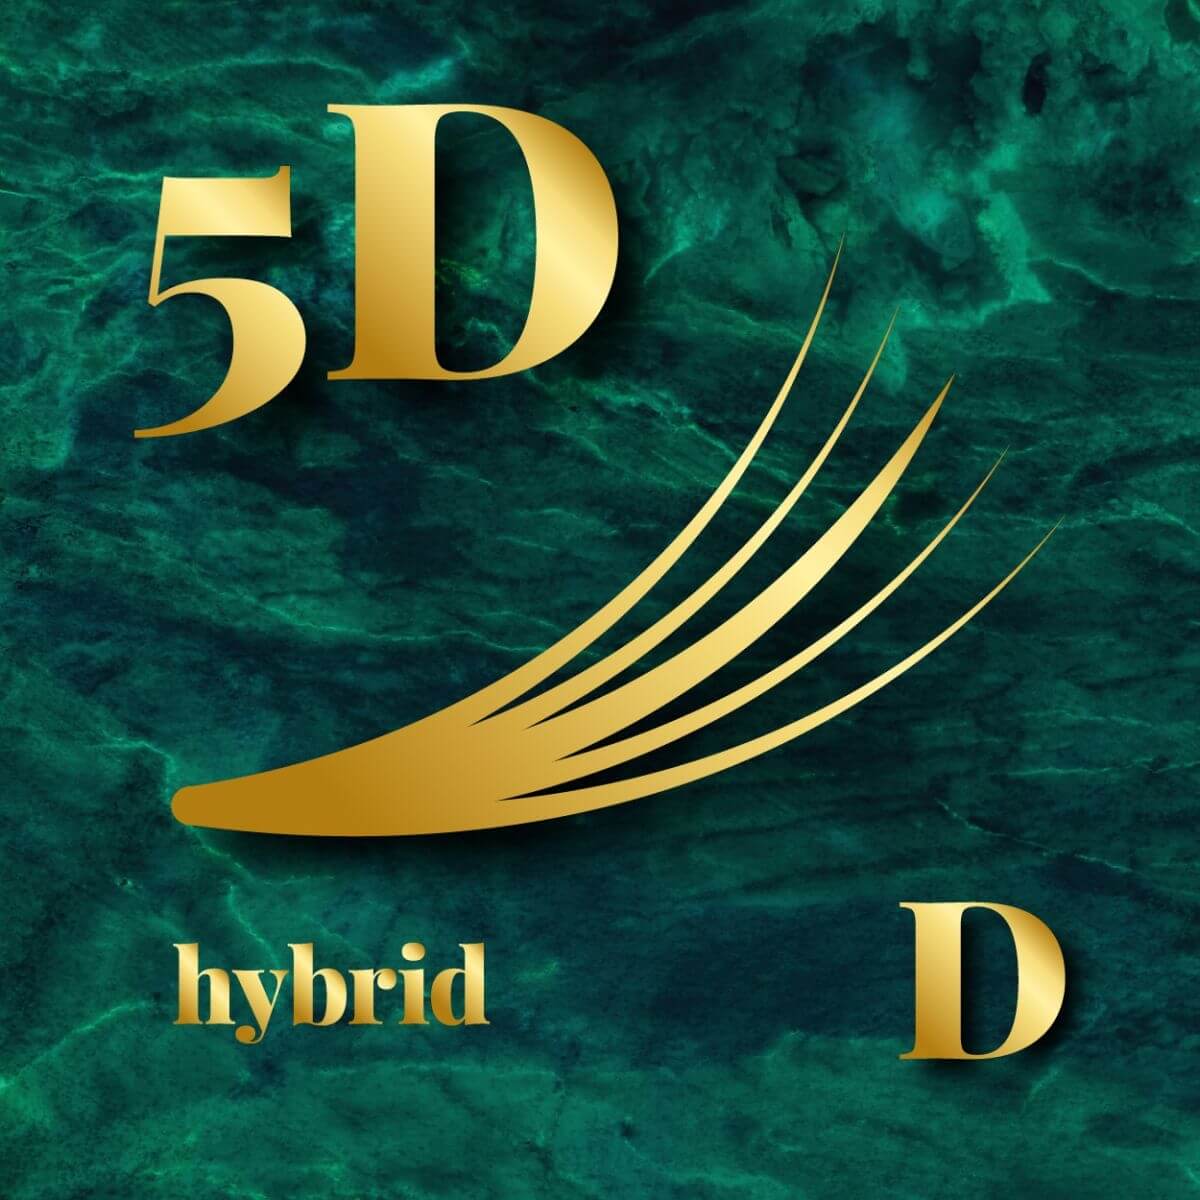  Hybrid KimK 5D - D ív - 500db / 1000db szempilla